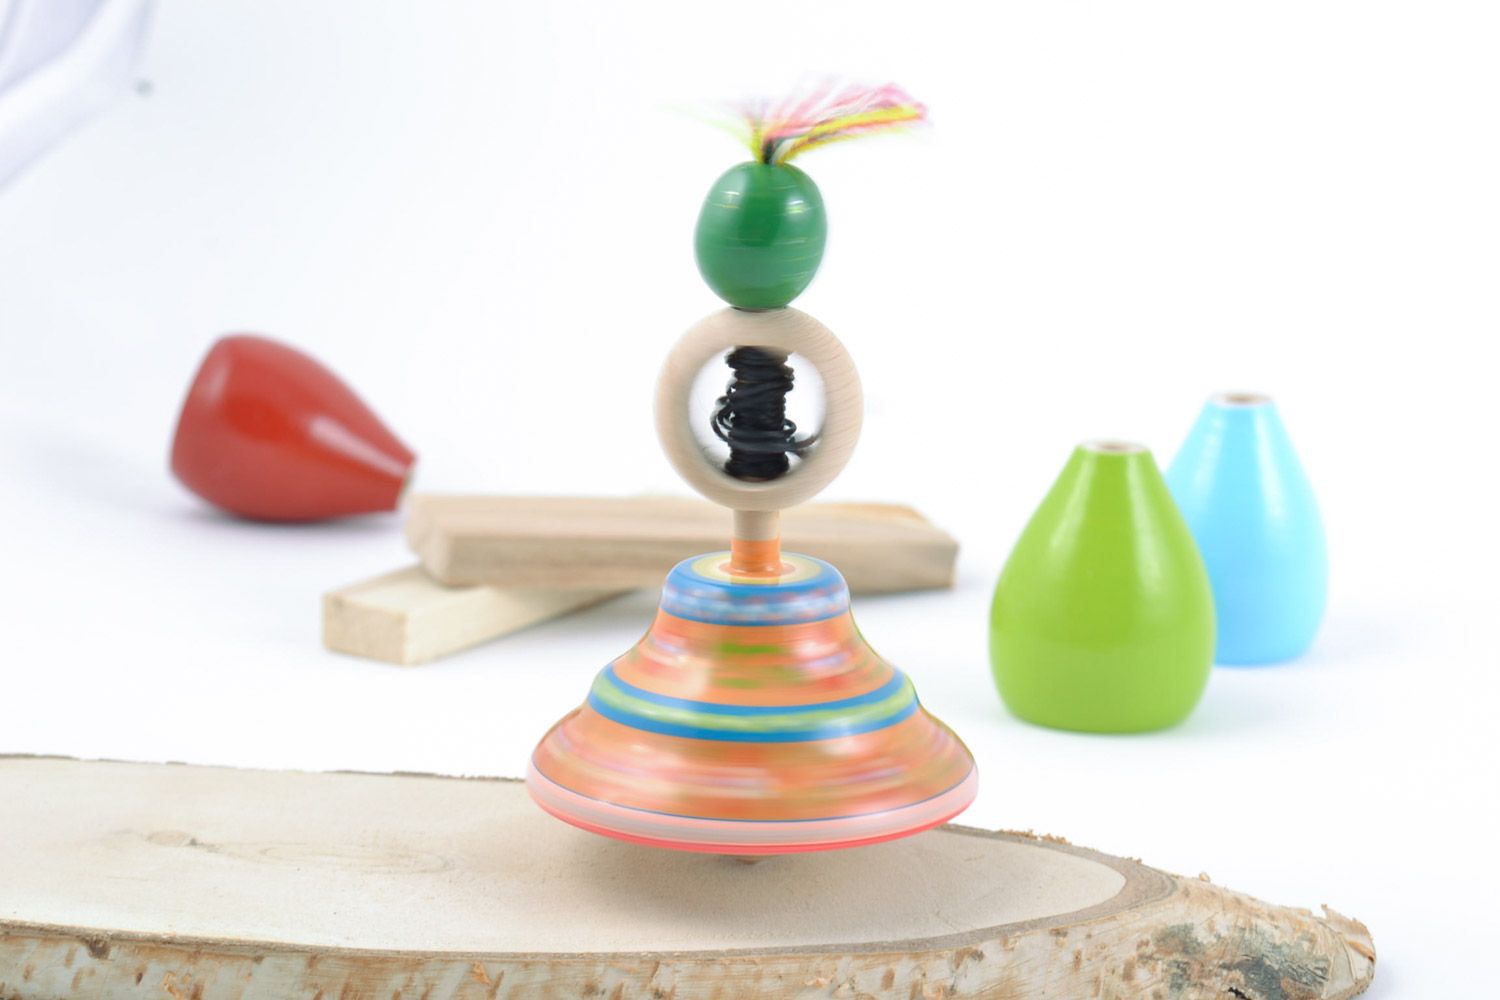 Красивый деревянный волчок ручной работы игрушка для детей расписанный красками фото 1